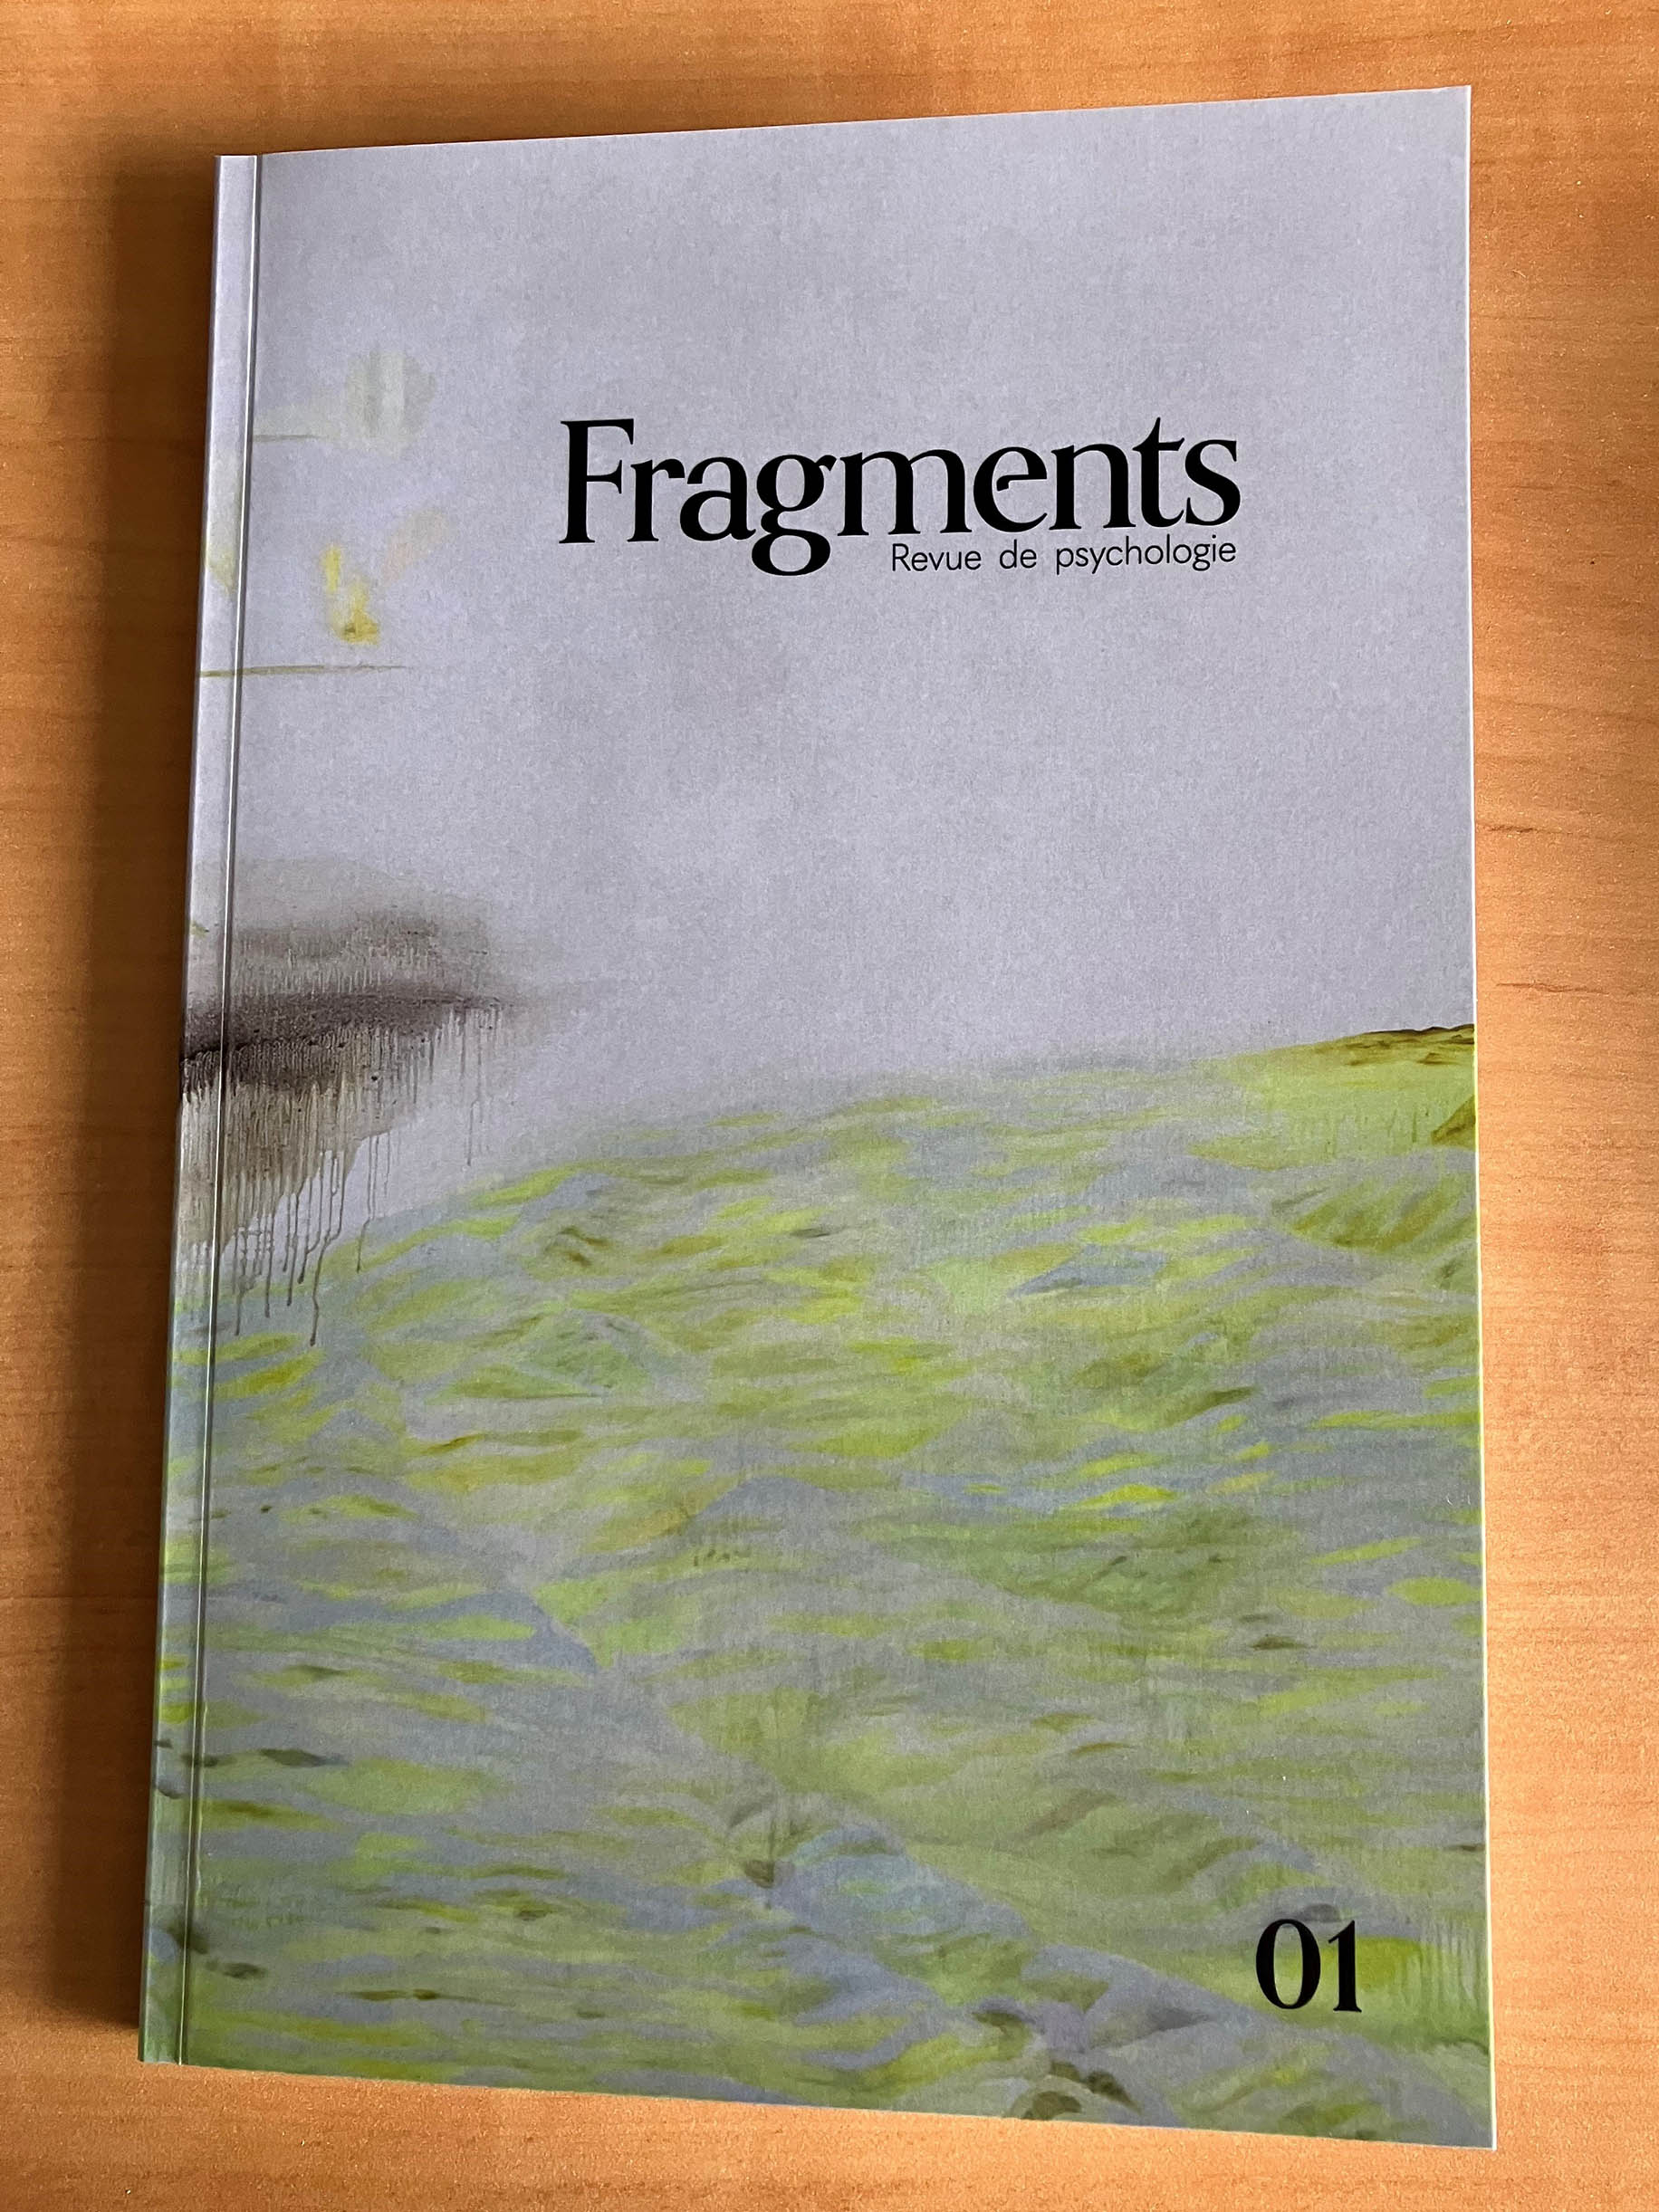 fragments_v2